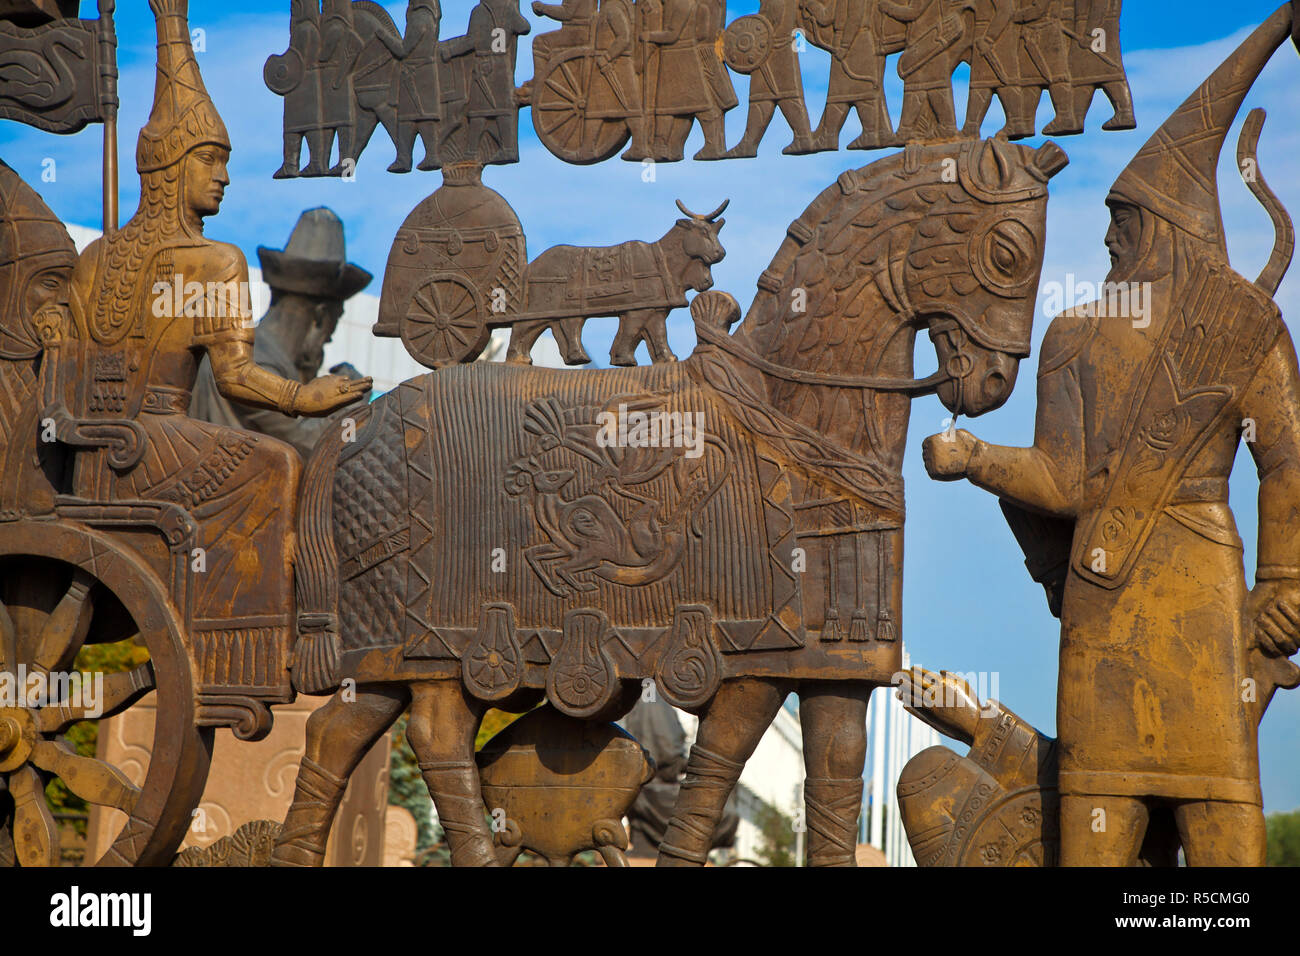 Kazakhstan, Almaty, Respublika Alangy créé soviétique carré, cérémonie du mur semi-circulaire bas-relief bronze sculputures représentant des scènes de l'histoire du Kazakhstan Banque D'Images